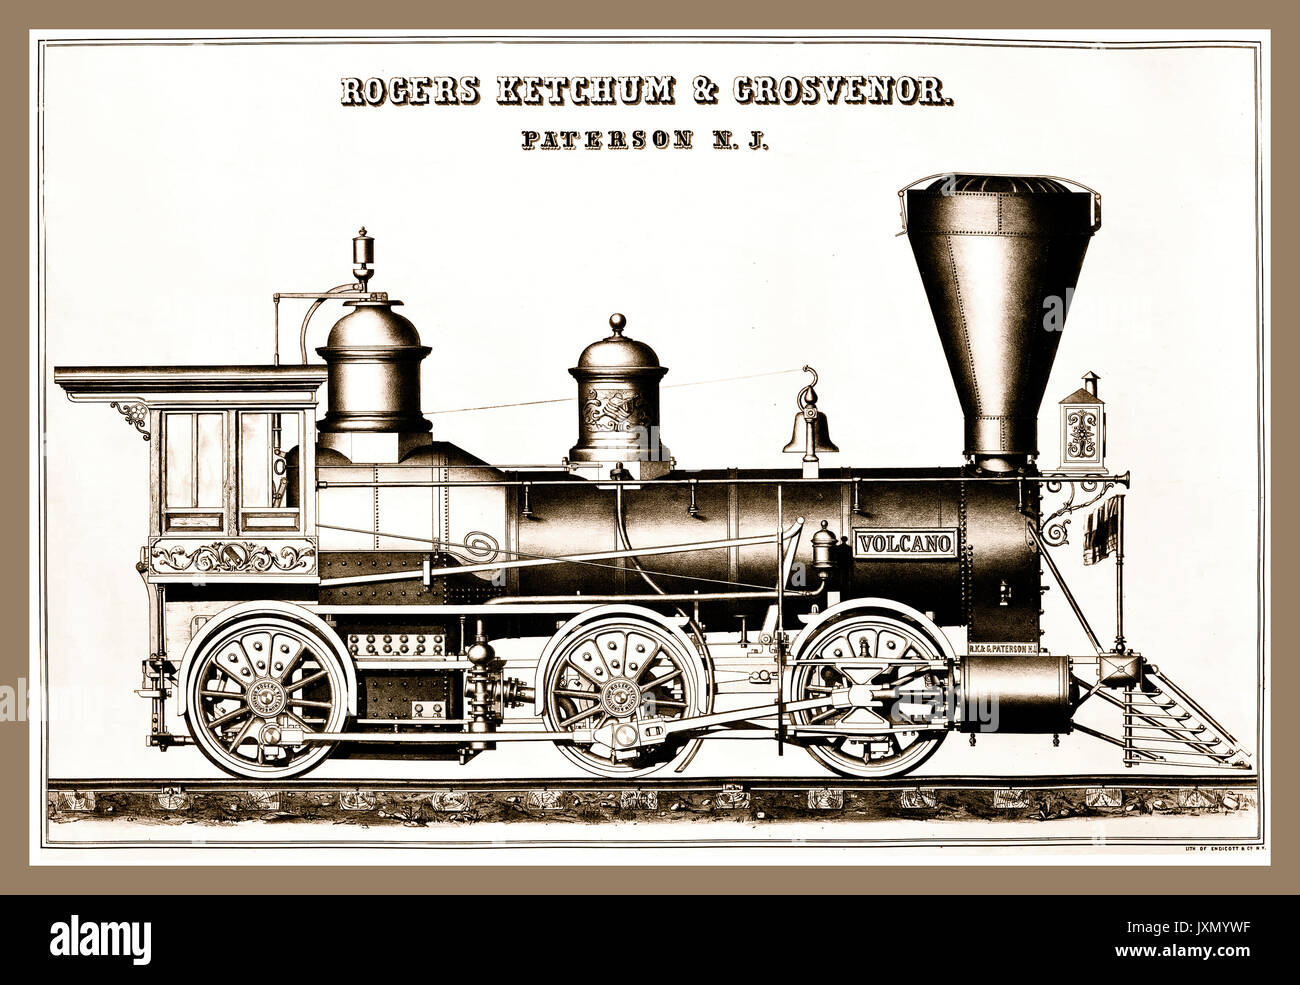 Locomotora de vapor Vintage poster ilustraciones de línea "Rogers Ketchum y Grosvenor" Vintage 'Volcán' locomotora de vapor 1870, Nueva Jersey, EE.UU Foto de stock